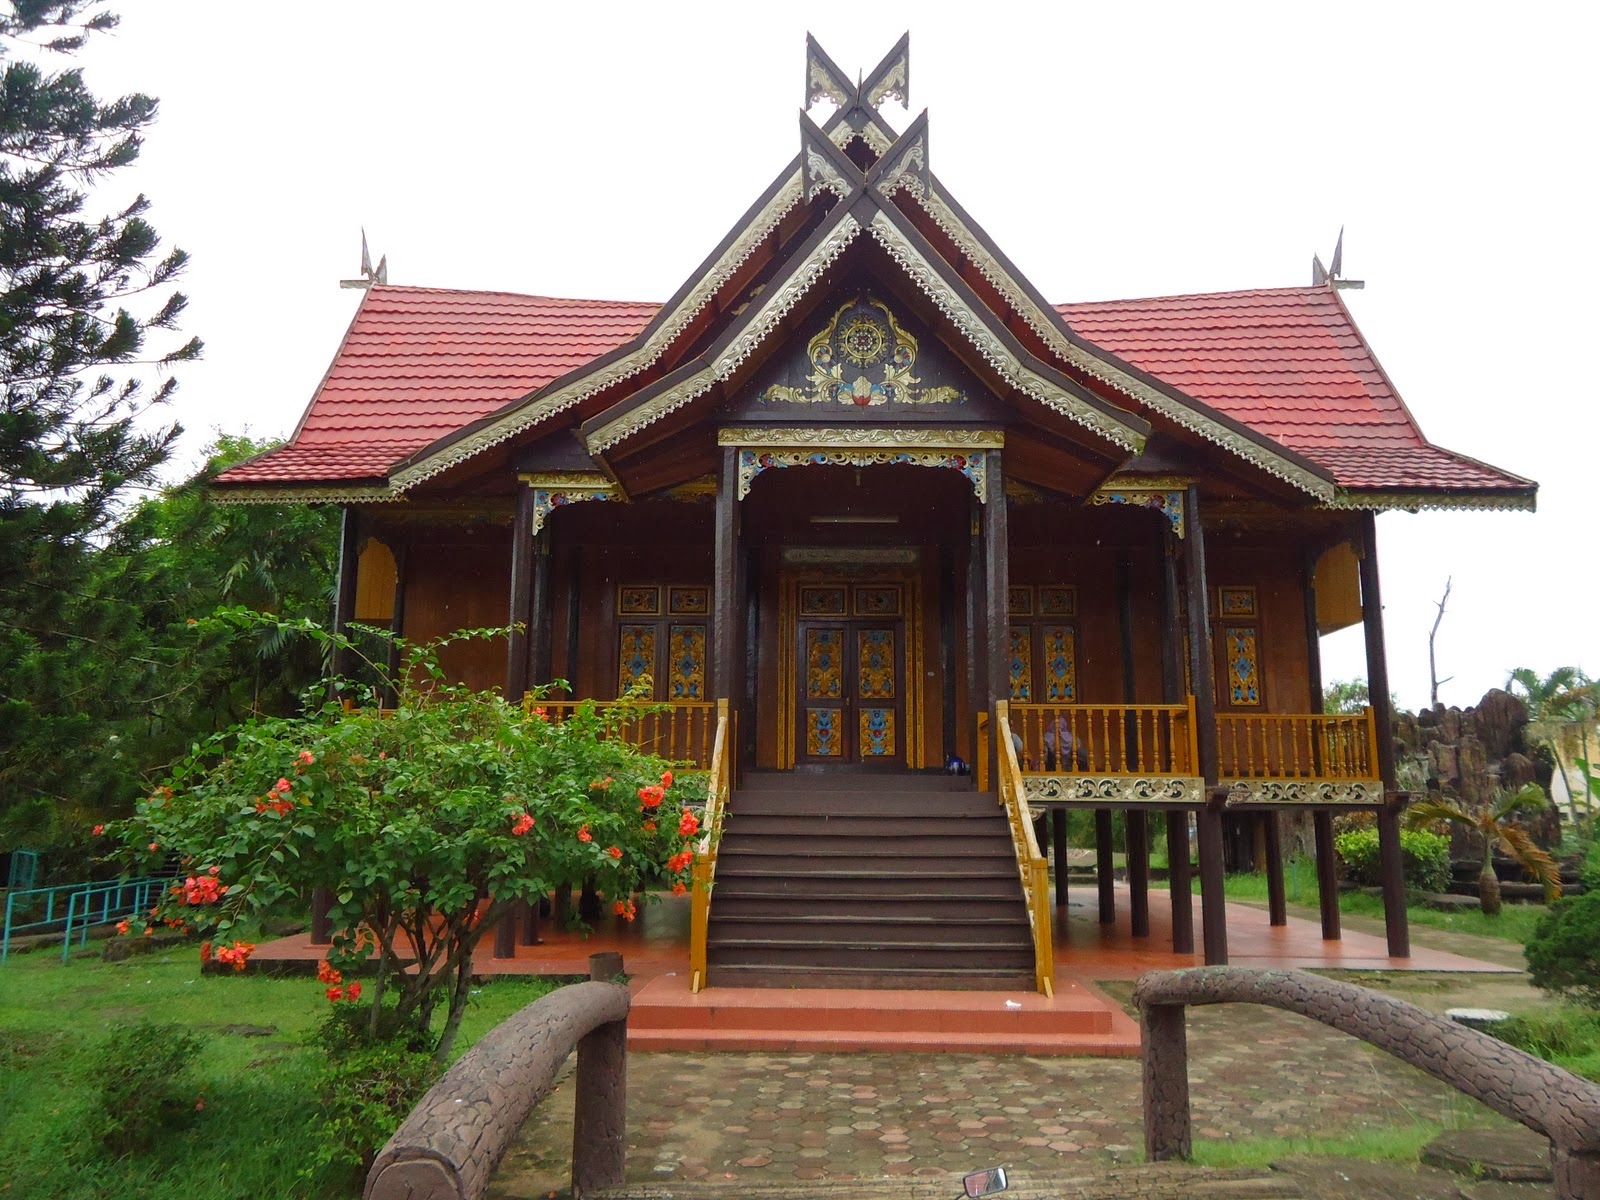 Rumah Adat Jambi » Perpustakaan Digital Budaya Indonesia